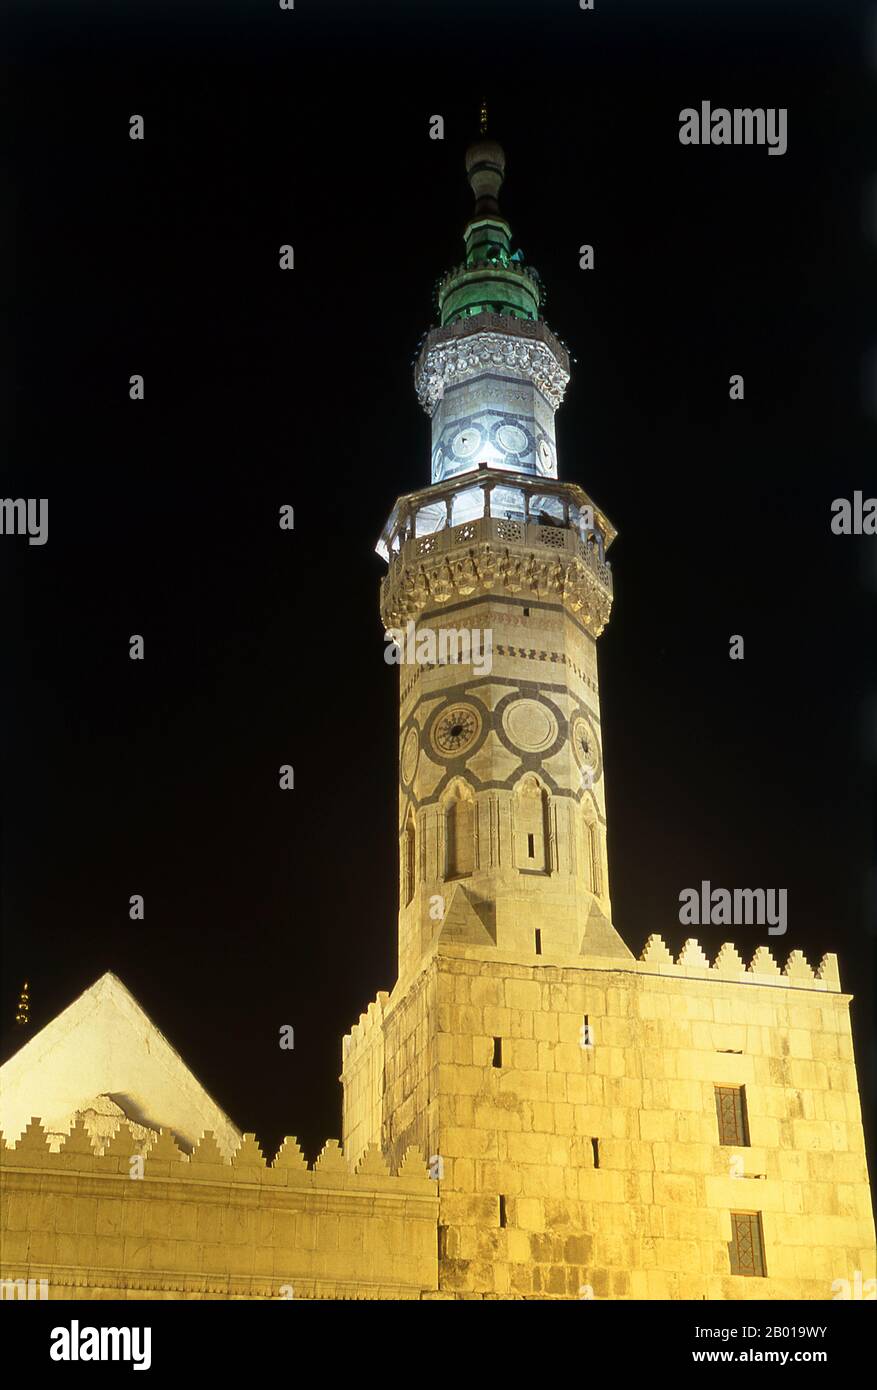 Syrien: Westliches Minarett bei Nacht, Umayyad-Moschee, Damaskus. Die Umayyad-Moschee, auch bekannt als die große Moschee von Damaskus, ist eine der größten und ältesten Moscheen der Welt. Es gilt als der viertheiligste Ort im Islam. Der Bau der Moschee soll kurz nach der arabischen Eroberung von Damaskus im Jahr 634 begonnen haben. Die Moschee enthält einen Schrein, der Johannes dem Täufer gewidmet ist, sowie das Grab von Saladin. Stockfoto